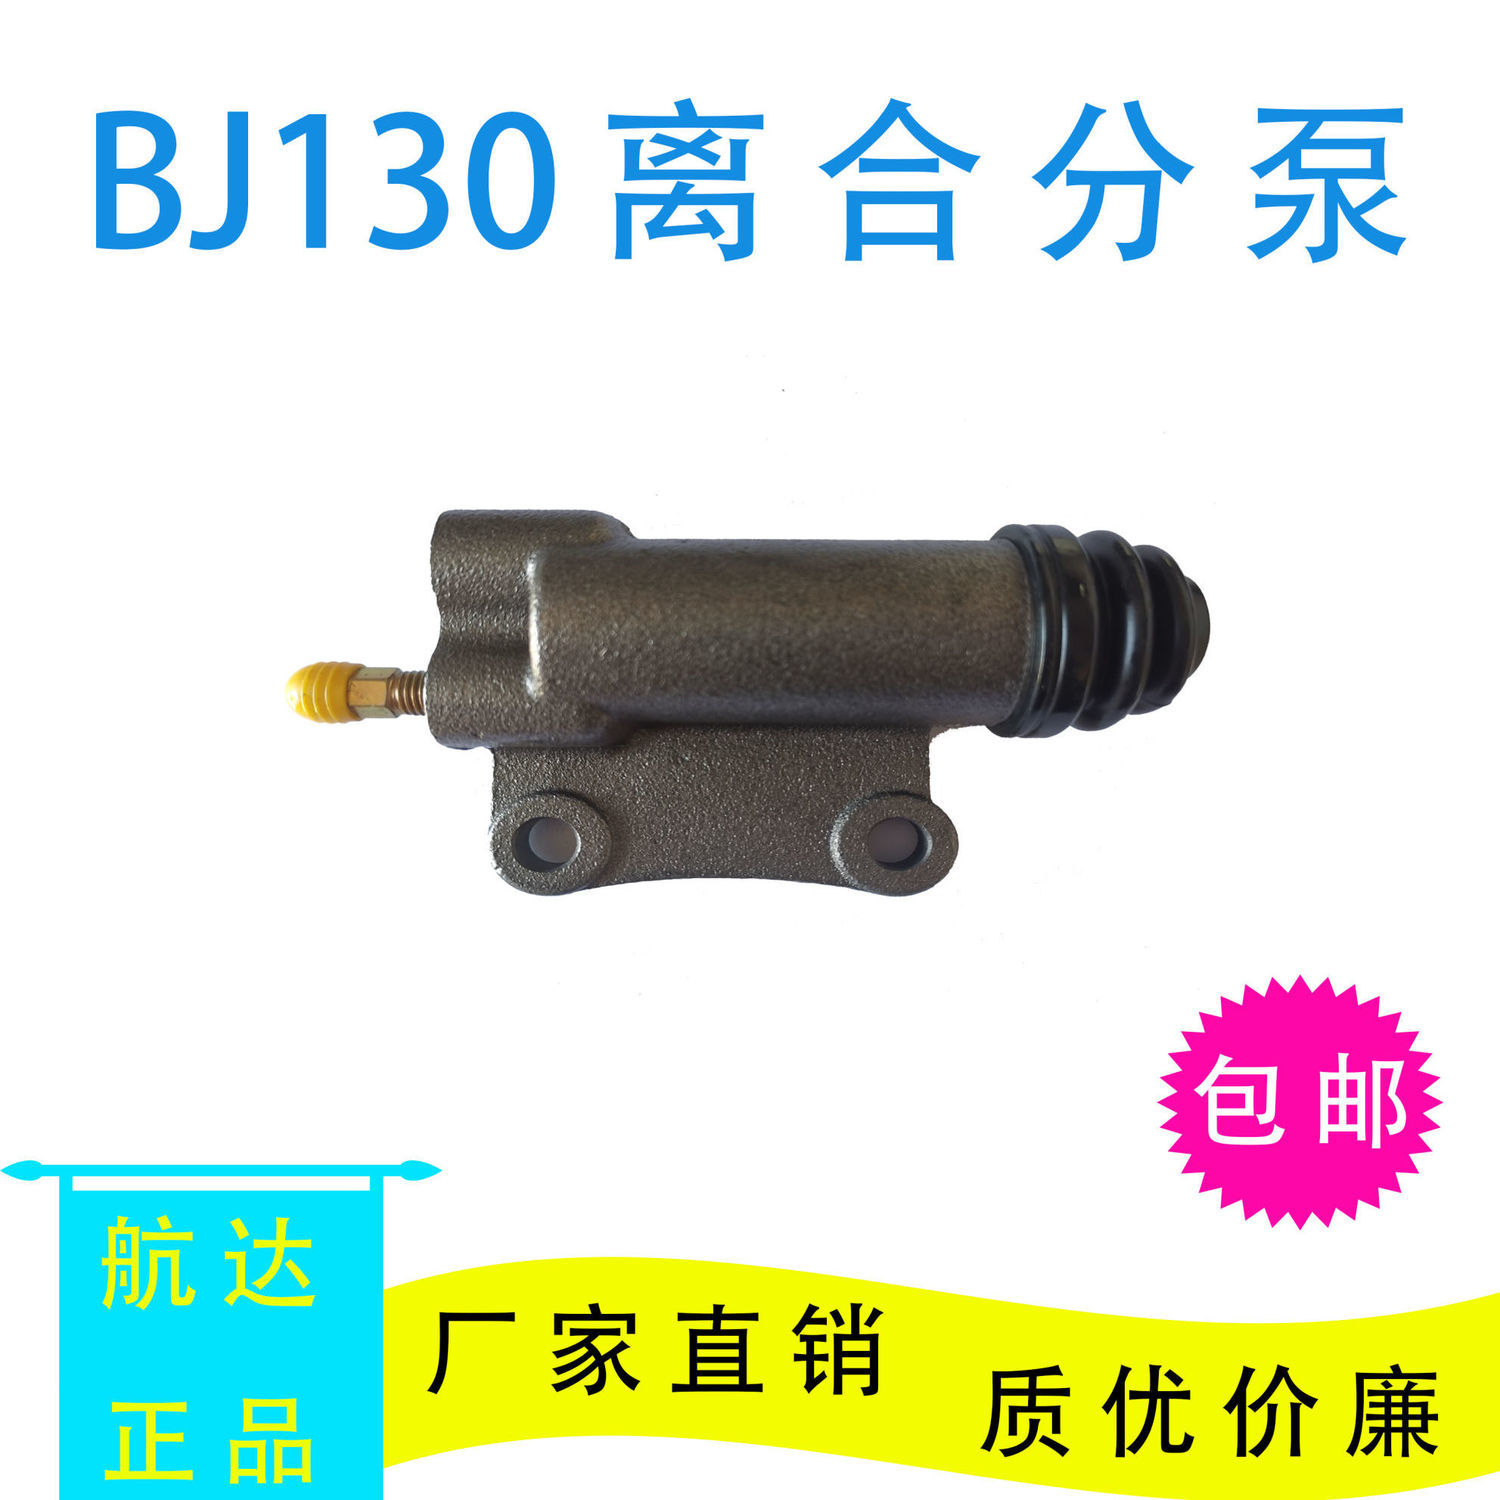 BJ130/212离合器分泵江淮福田杭叉铲货车农用车收割机轻卡离分